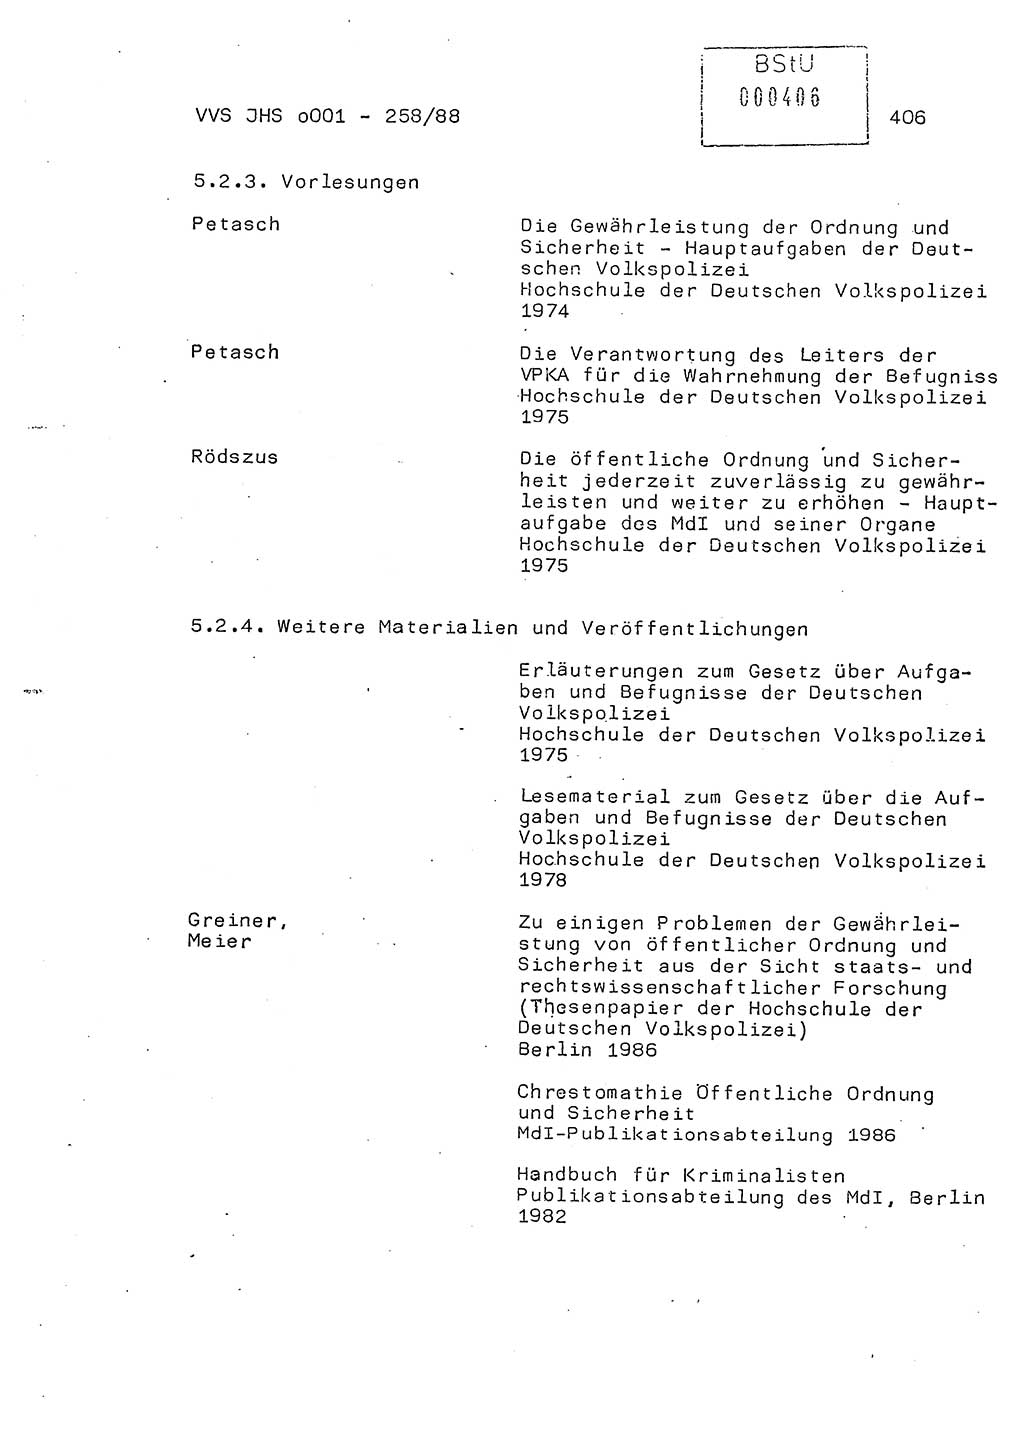 Dissertation, Oberleutnant Uwe Kärsten (JHS), Hauptmann Dr. Joachim Henkel (JHS), Oberstleutnant Werner Mählitz (Leiter der Abt. Ⅸ BV Rostock), Oberstleutnant Jürgen Tröge (HA Ⅸ/AKG), Oberstleutnant Winfried Ziegler (HA Ⅸ/9), Major Wolf-Rüdiger Wurzler (JHS), Ministerium für Staatssicherheit (MfS) [Deutsche Demokratische Republik (DDR)], Juristische Hochschule (JHS), Vertrauliche Verschlußsache (VVS) o001-258/88, Potsdam 1988, Seite 405 (Diss. MfS DDR JHS VVS o001-258/88 1988, S. 405)